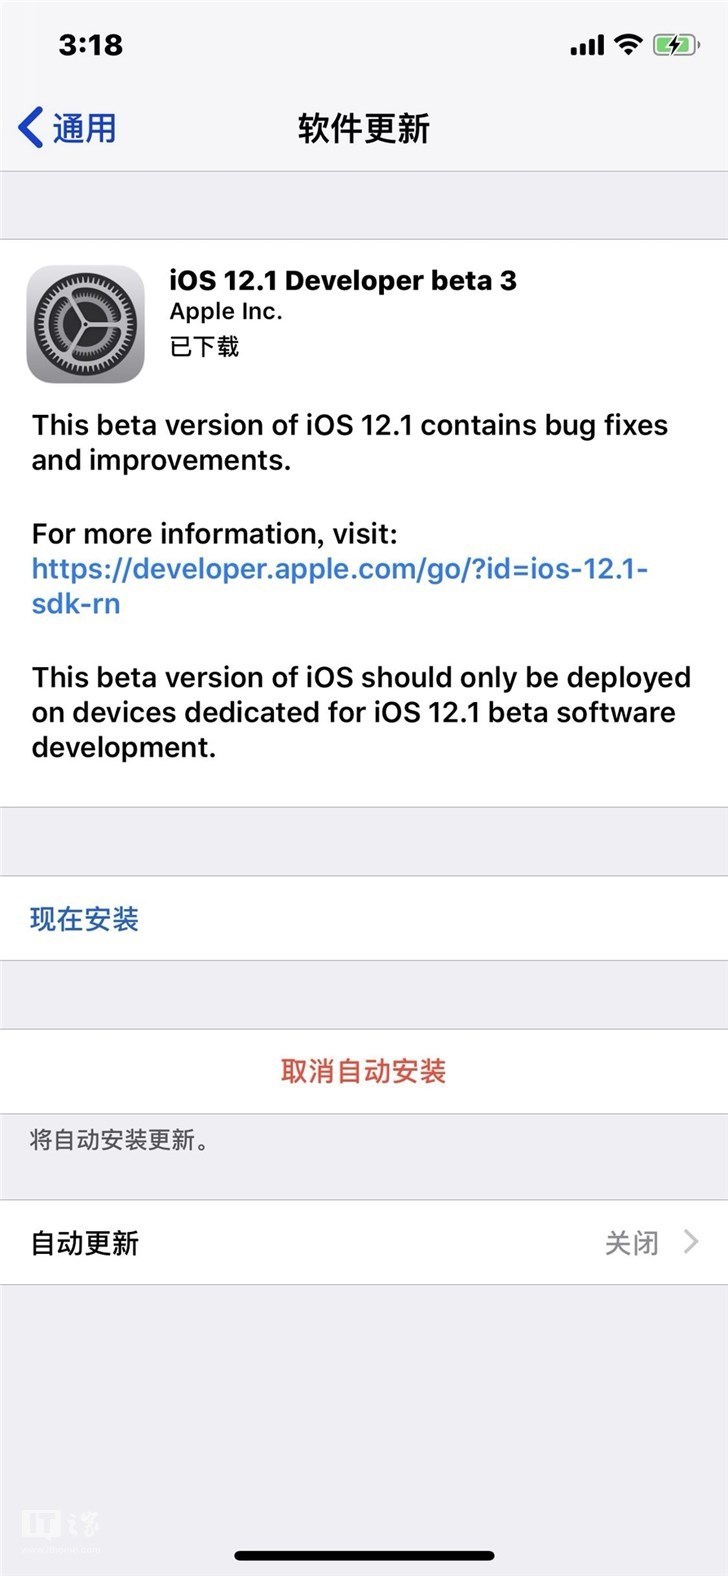 苹果推送最新iOS 12.1开发者预览版beta 3系统